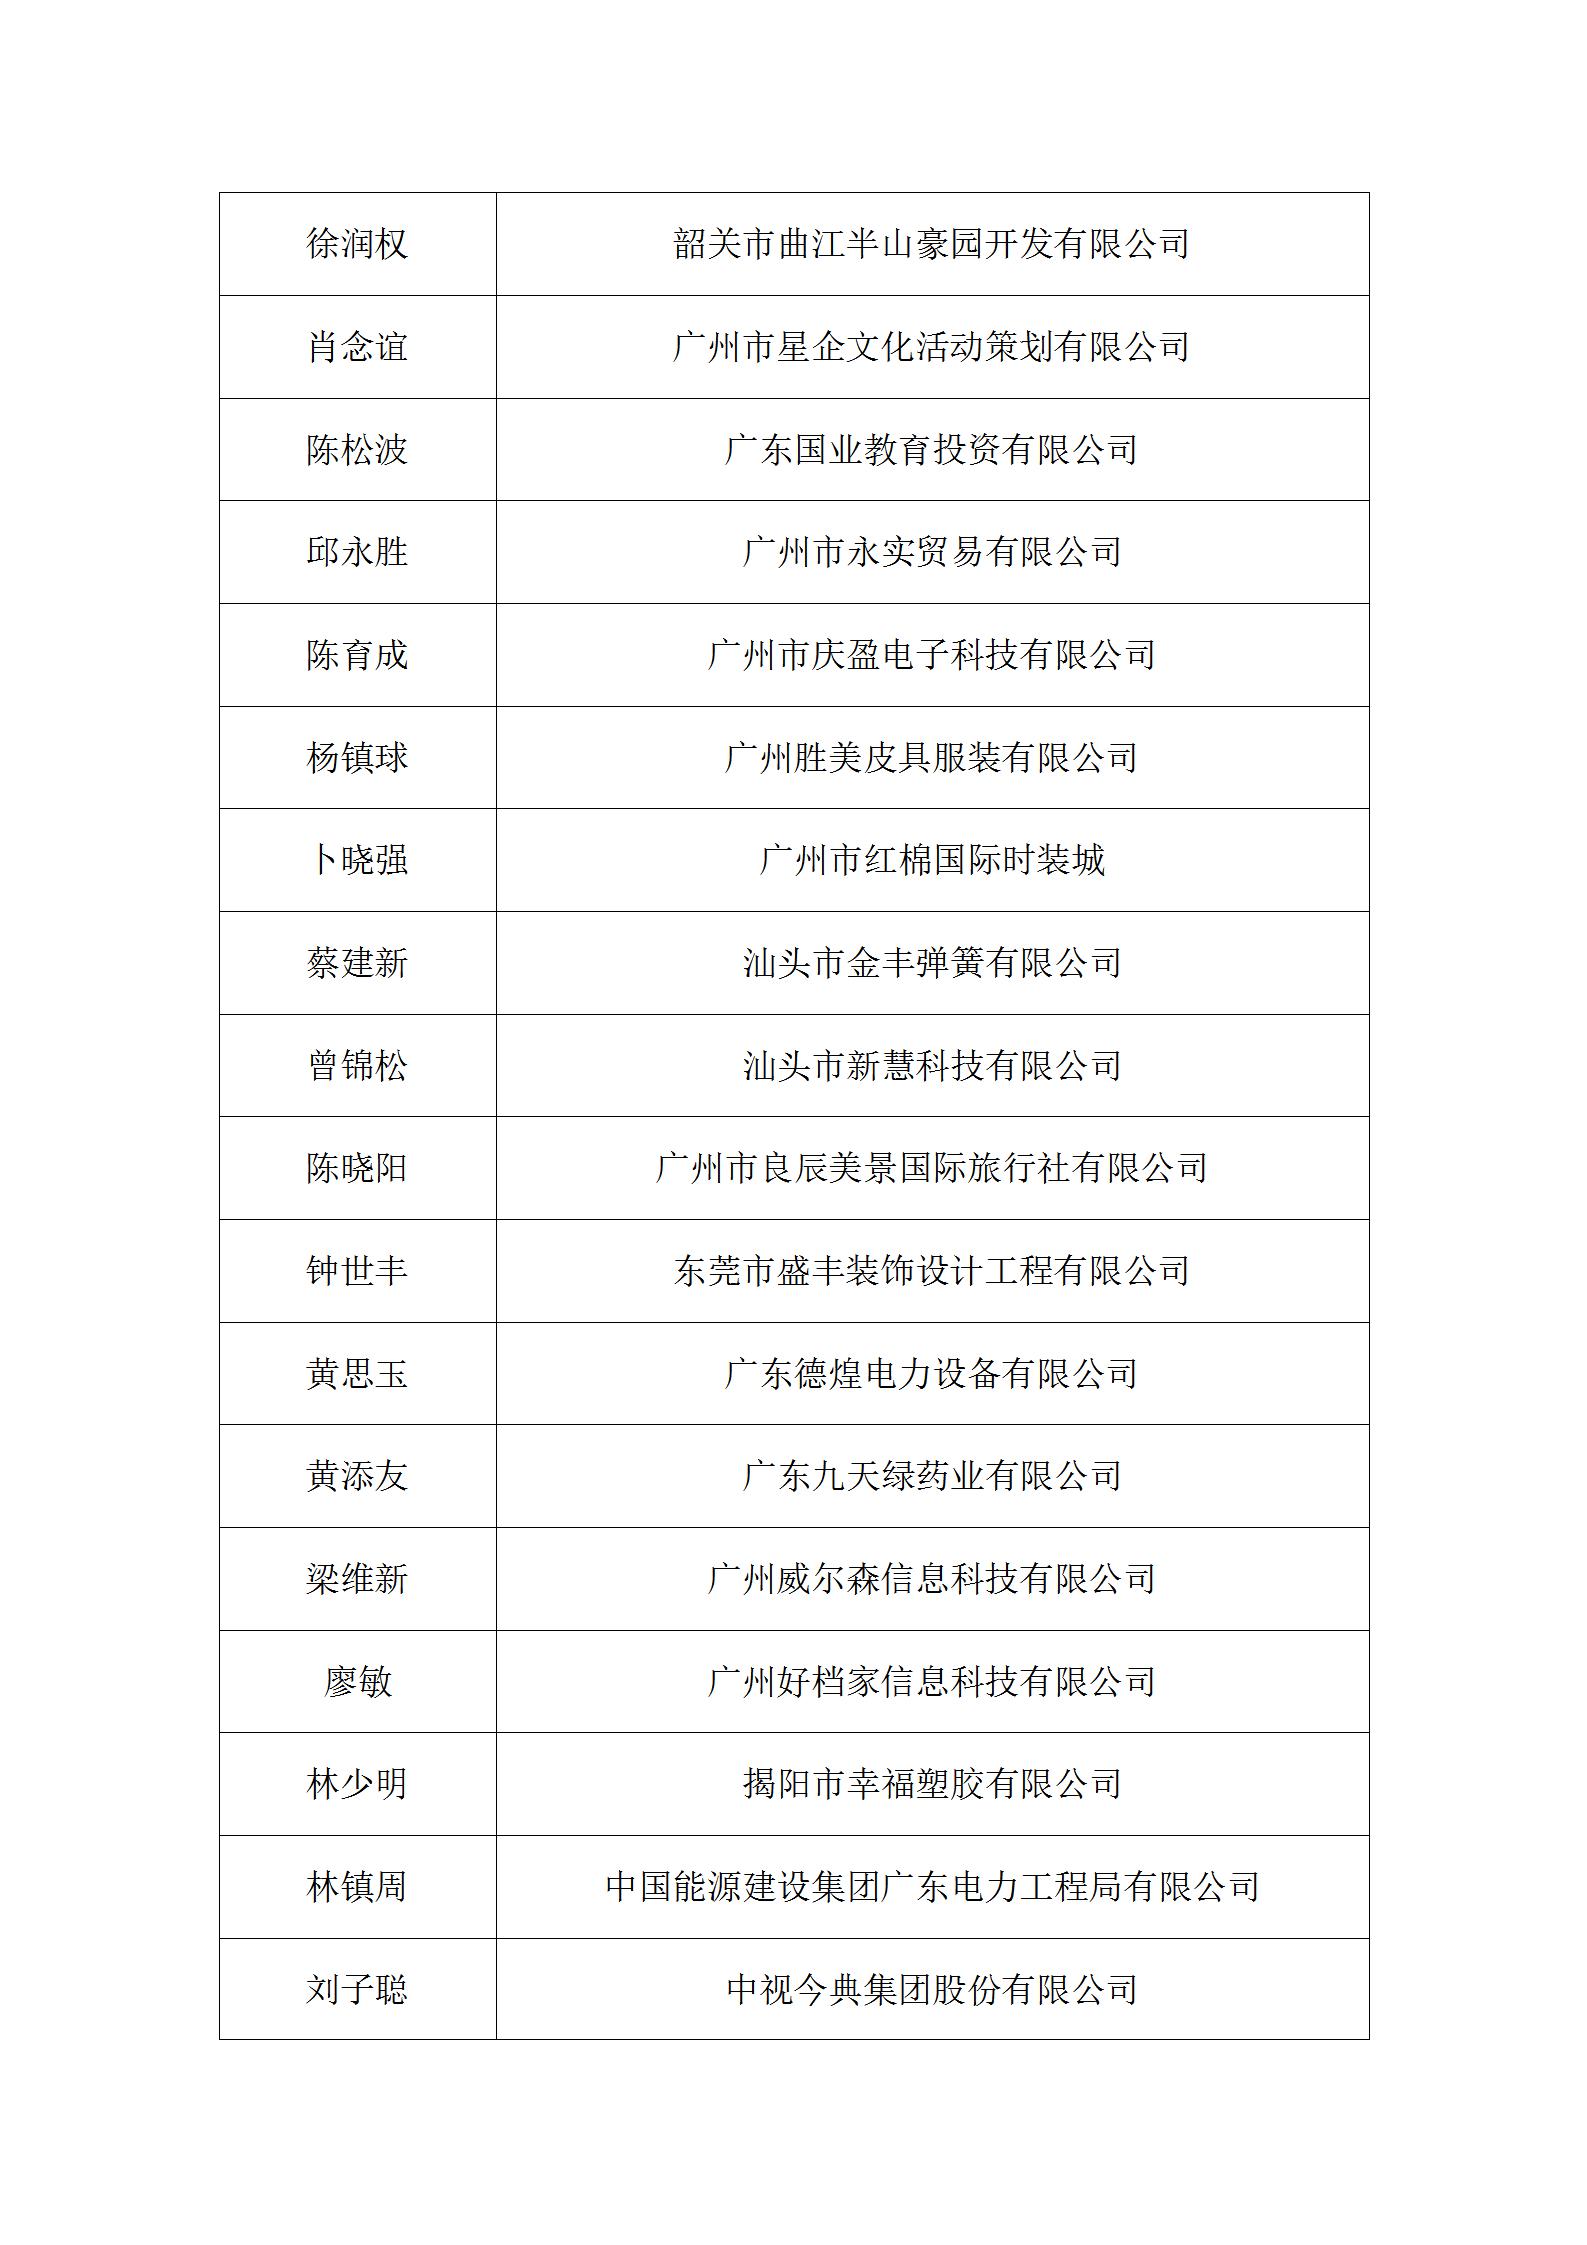 经省经企联第七届换届领导小组审查确认会员名单公告_07.jpg